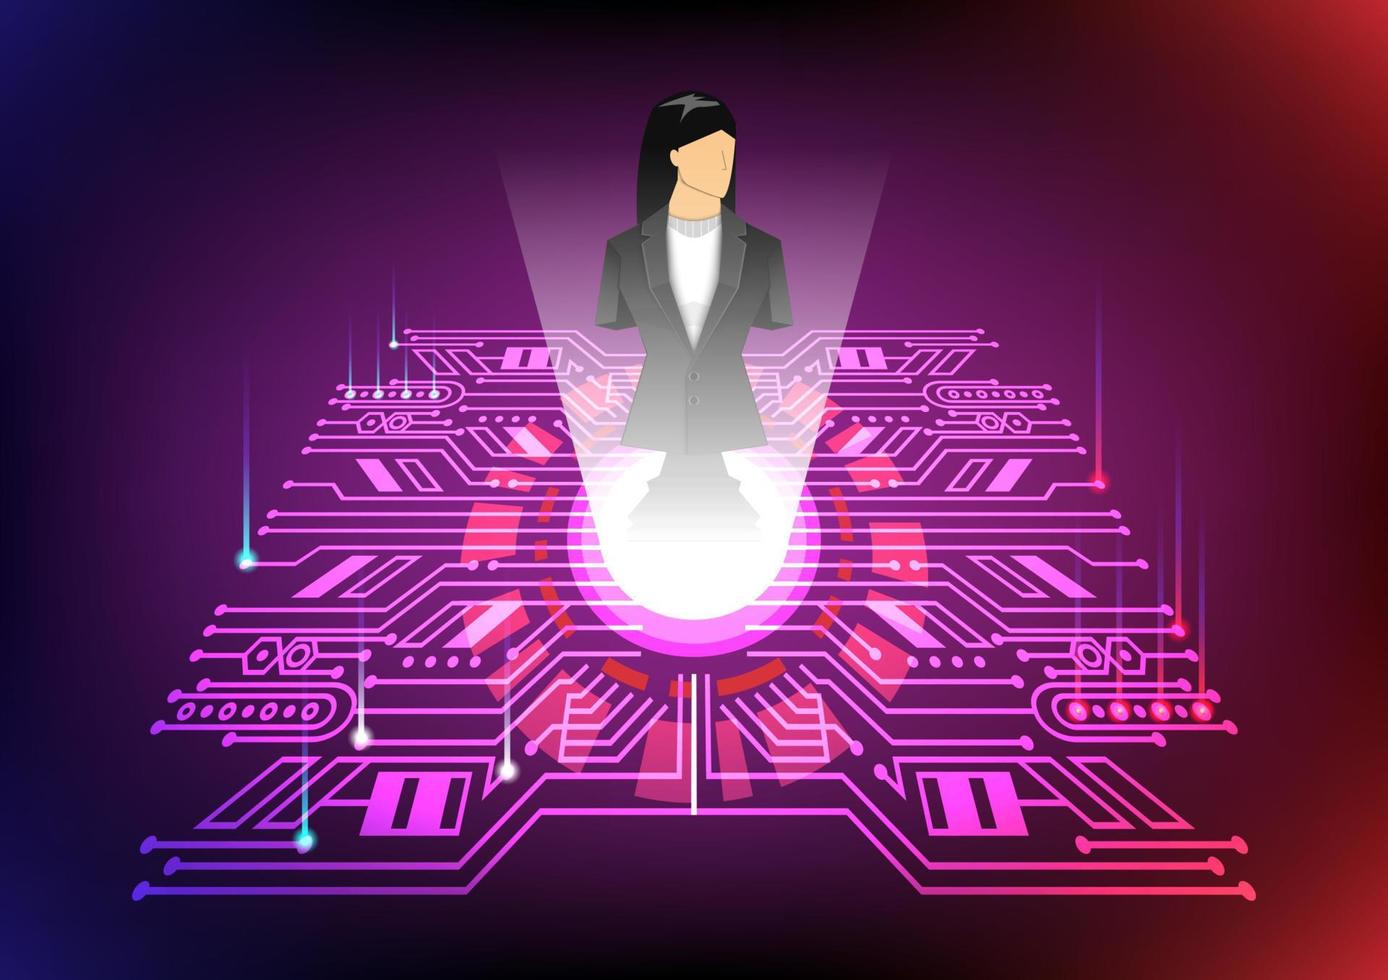 ledarskap koncept, svart-schack-affärskvinna, blått och rött ljus hitech bakgrund, vektor illustratör